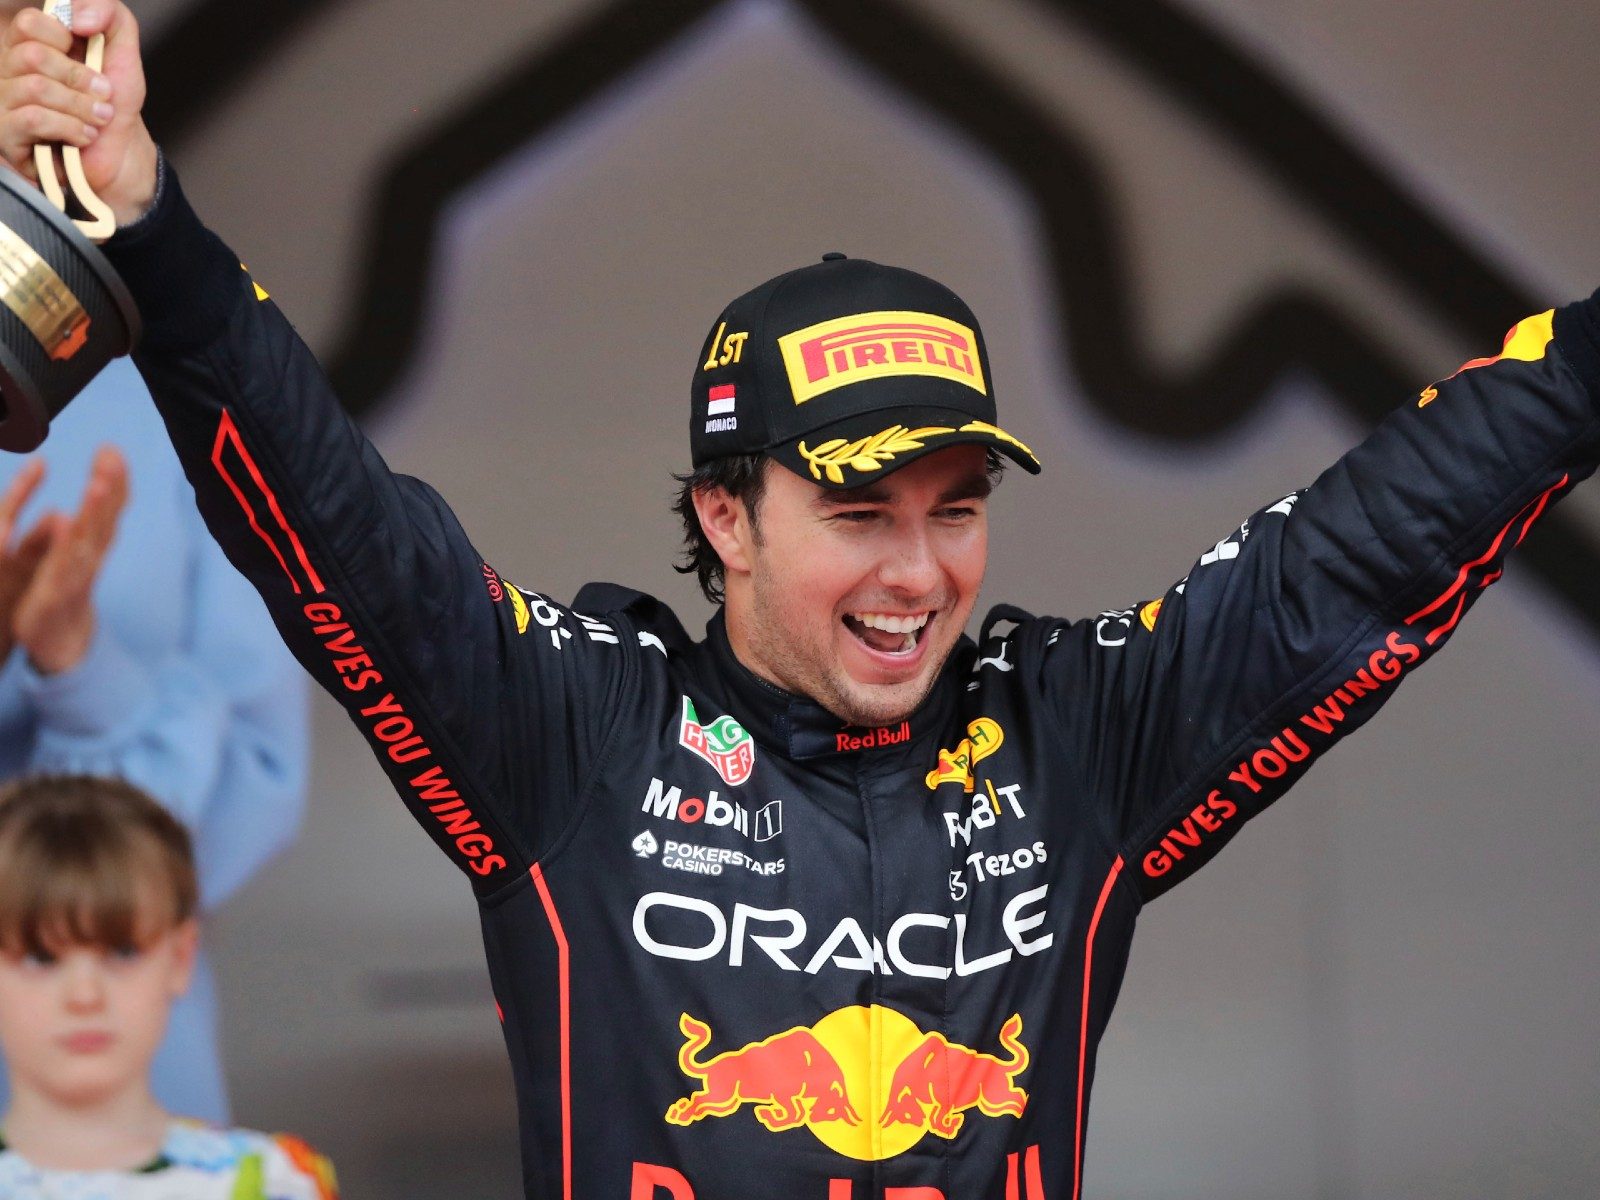 Monaco Grand Prix: Sergio Perez Wins Rain Hit Race